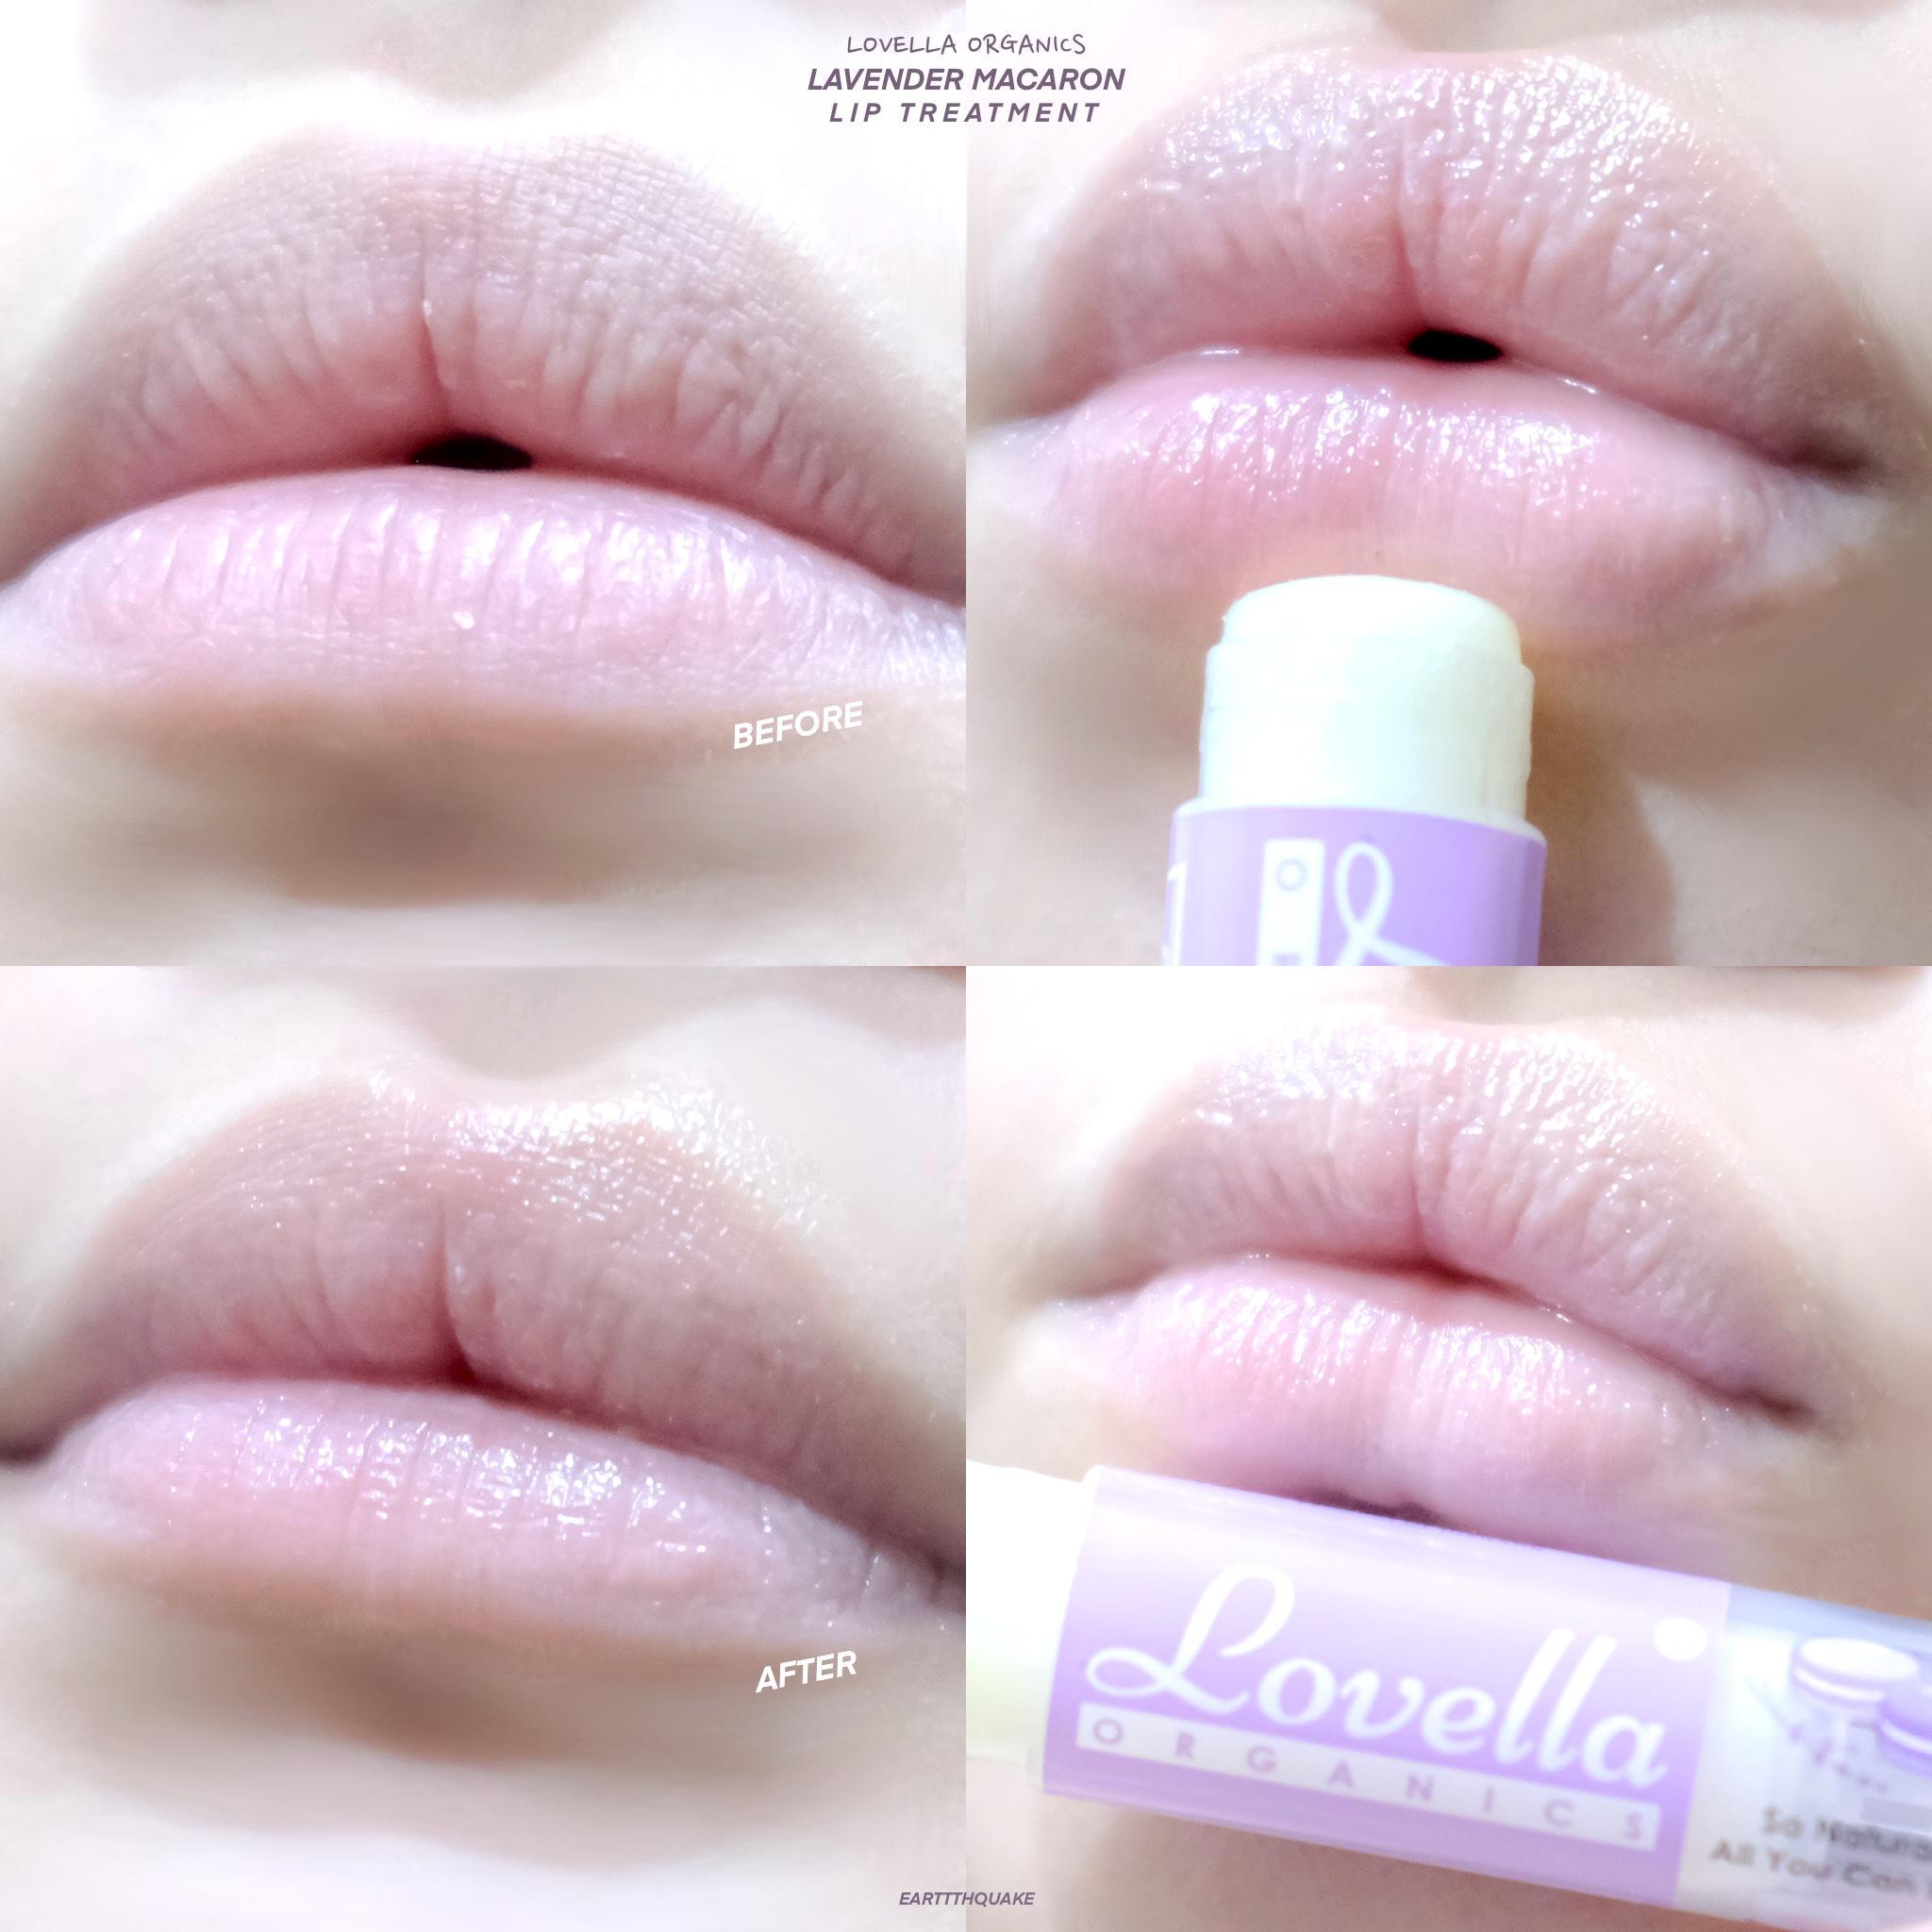 ภาพหน้าปก ลิปทรีทเมนท์ออแกนิค กลิ่นมาการอง ปากนุ่ม~ ชุ่มชื้น😚🫦 lovella organics Lavender Macaron Lip Treatment ที่:2